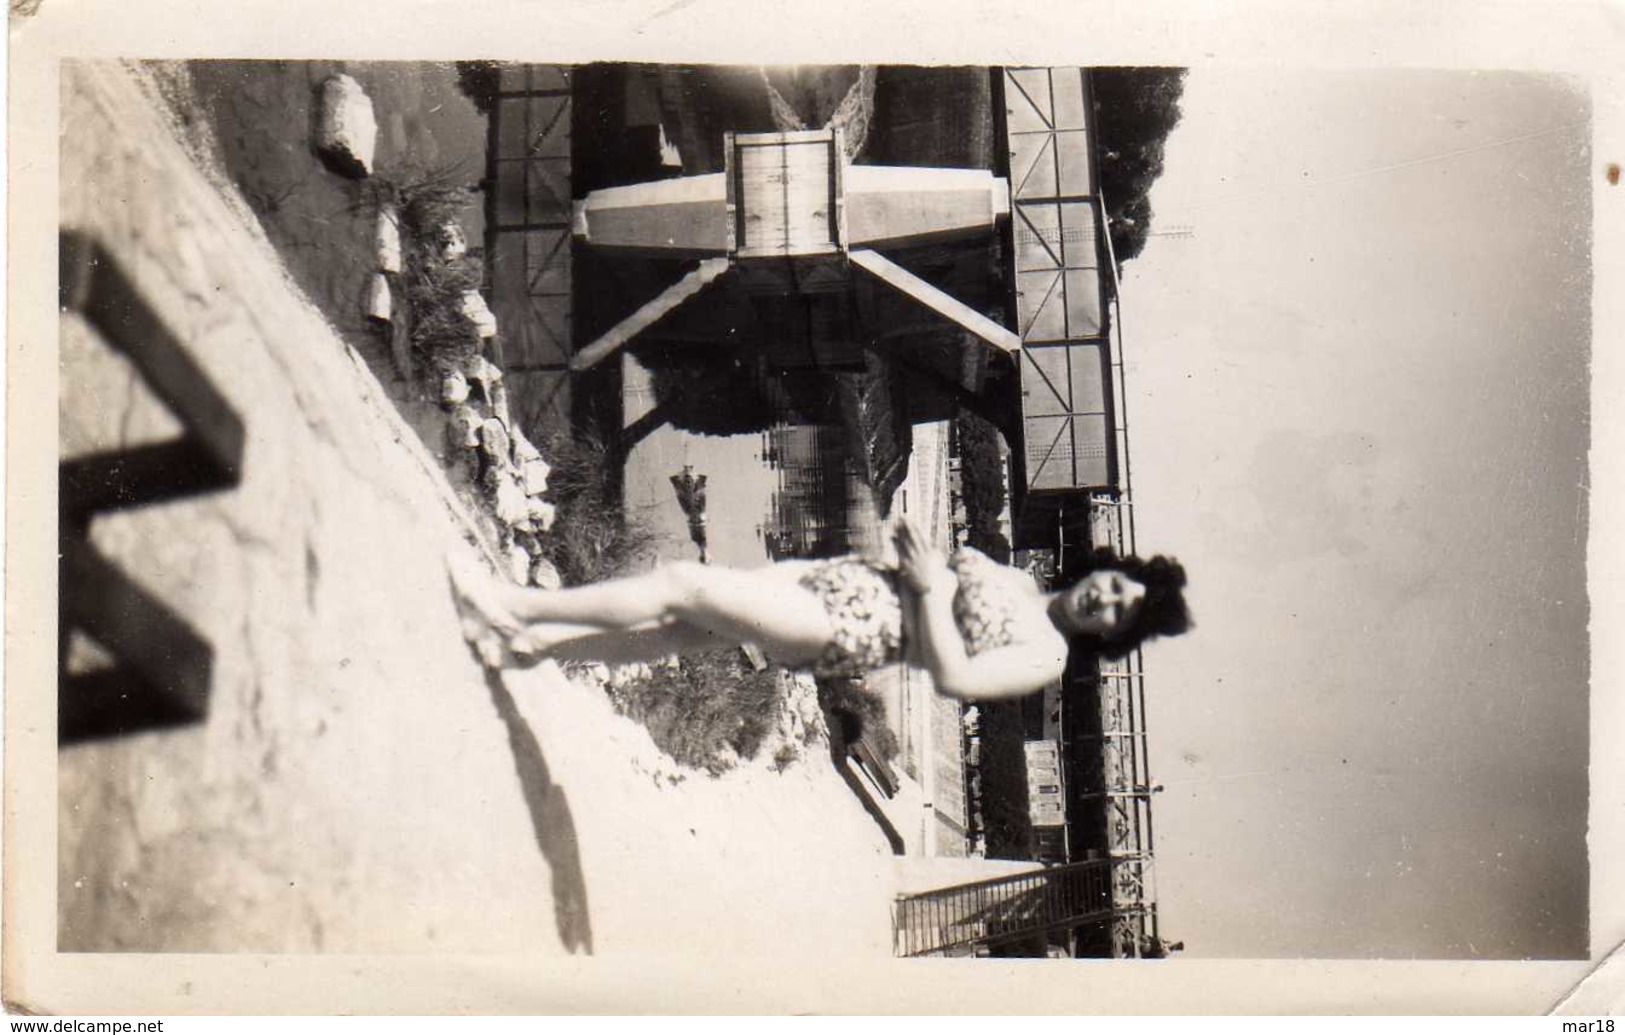 9 photos 1950 scene de la vie plage maillot de bain femme enfant homme